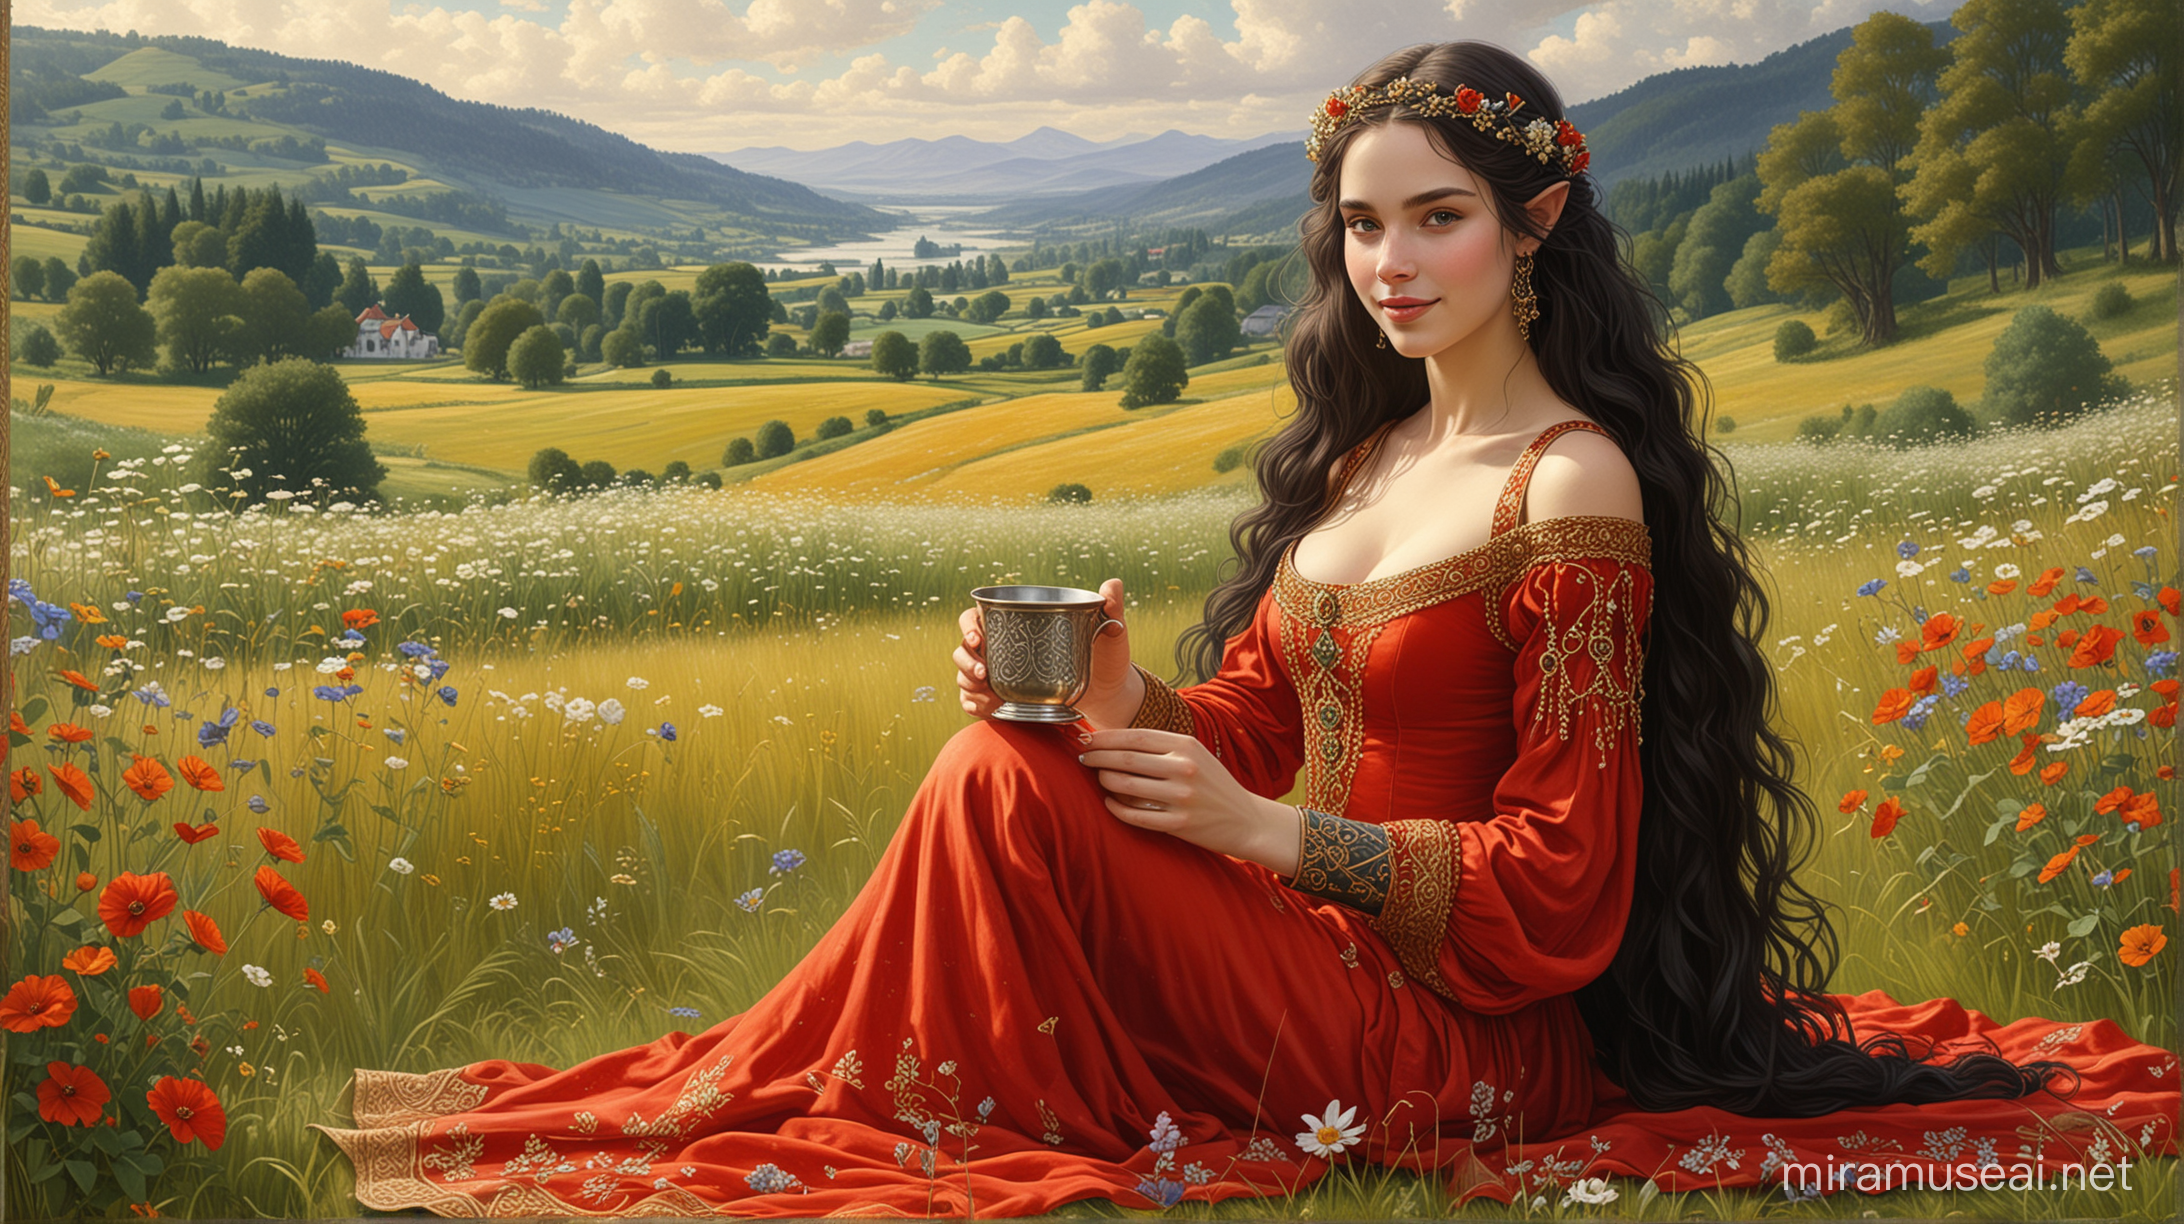 Piękna, usmiechnieta średniowieczna księżniczka elfów w czerwonej sukni. Ona siedzi na trawie i pije ze srebrnego kubka. Ona ma bardzo długie i gęste czarne włosy. W tle krajobraz: Kwiaty, trawa, dojrzałe zboże na polach, dębowa puszcza i odległe góry. Jest letni słoneczny dzień. Grafika ma ozdobną celtycką bordiurę dookoła grafiki. Grafika w stylu malarskim Gustava Klimta.